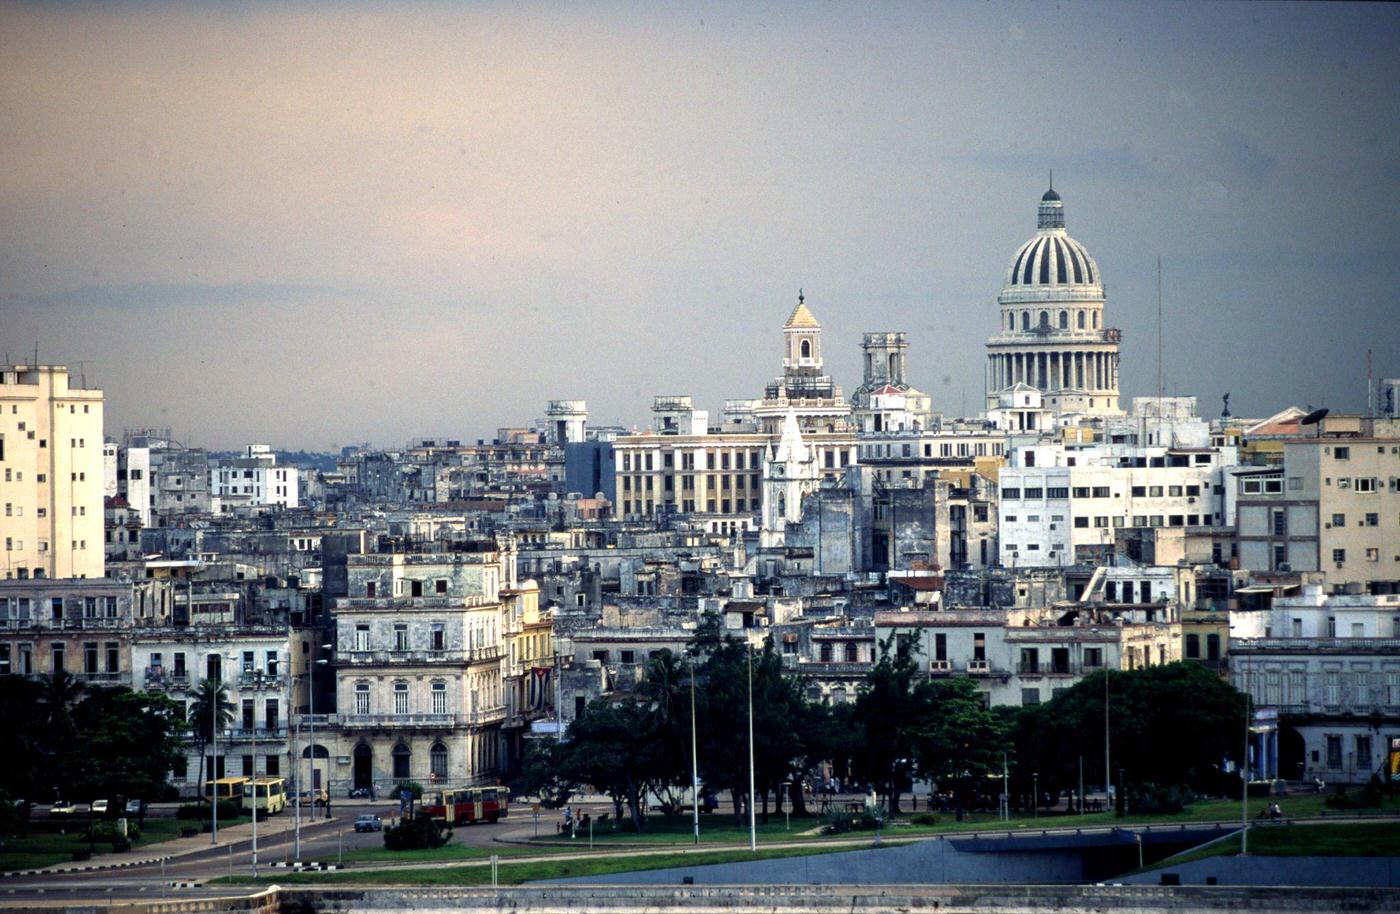 Downtown Havana seen from the El Morro fortress overlooking Havana harbor, Cuba, 1991.